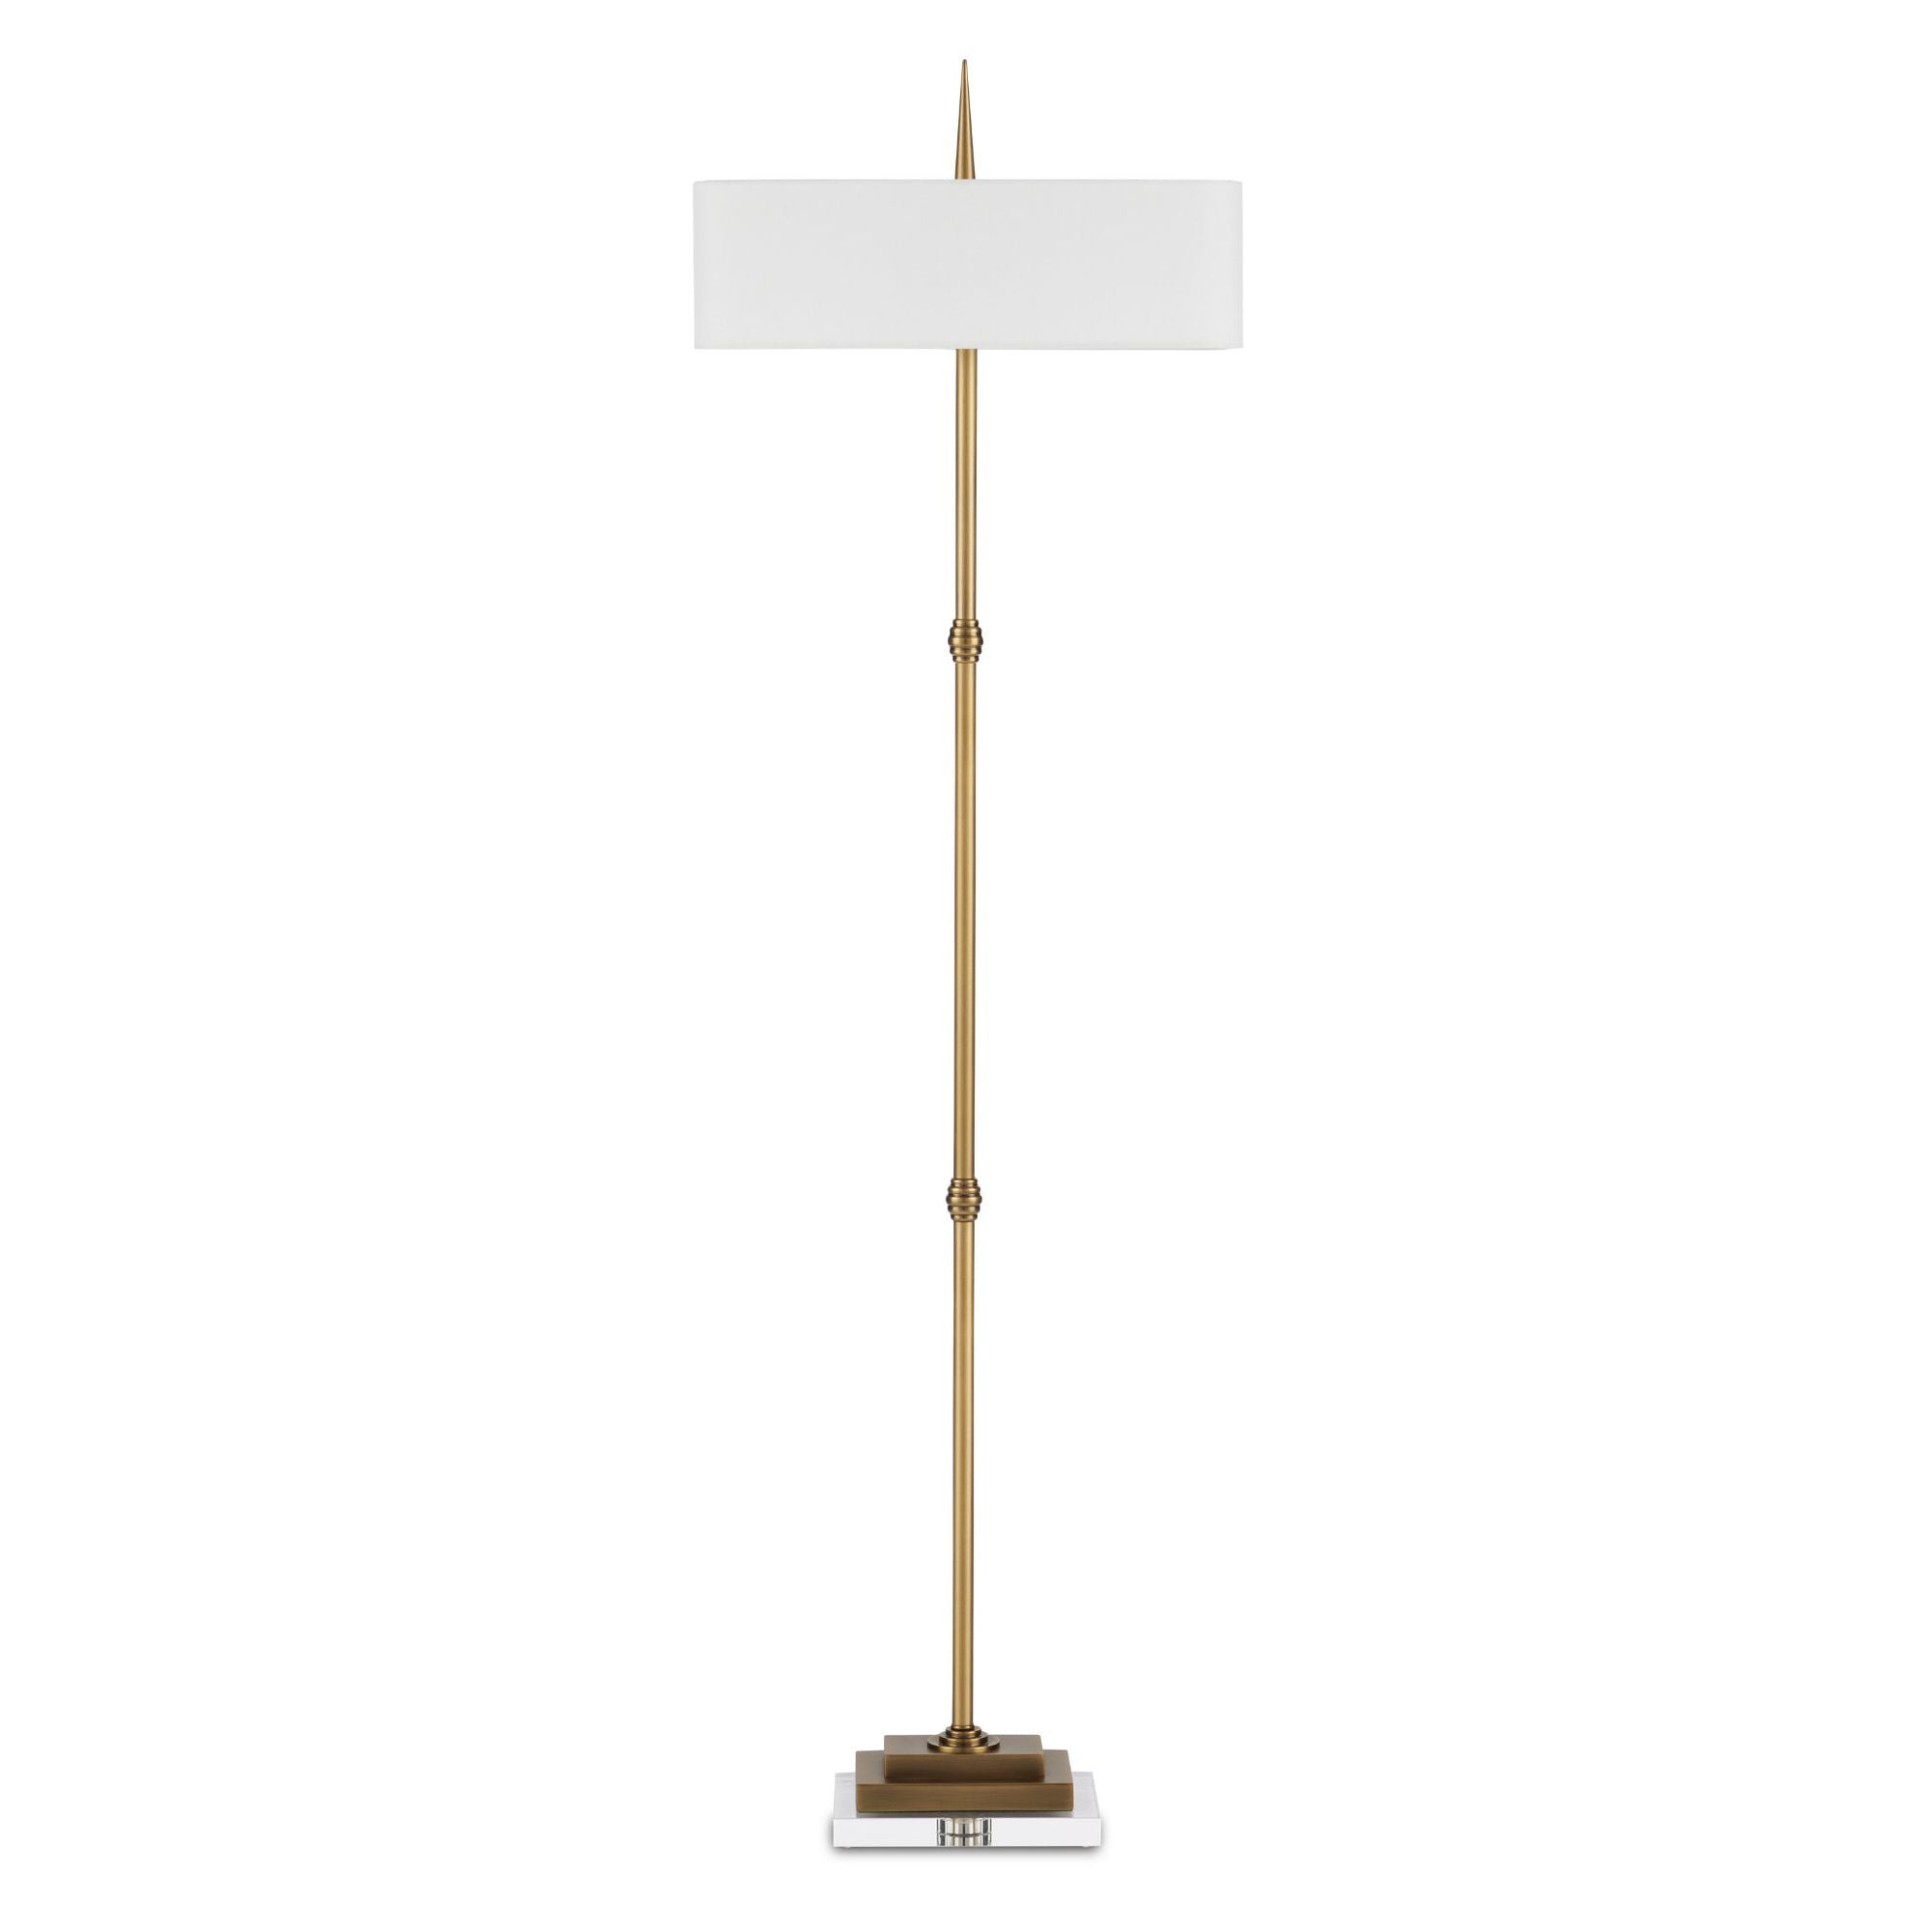 Caldwell Brass Floor Lamp - Antique Brass/Clear